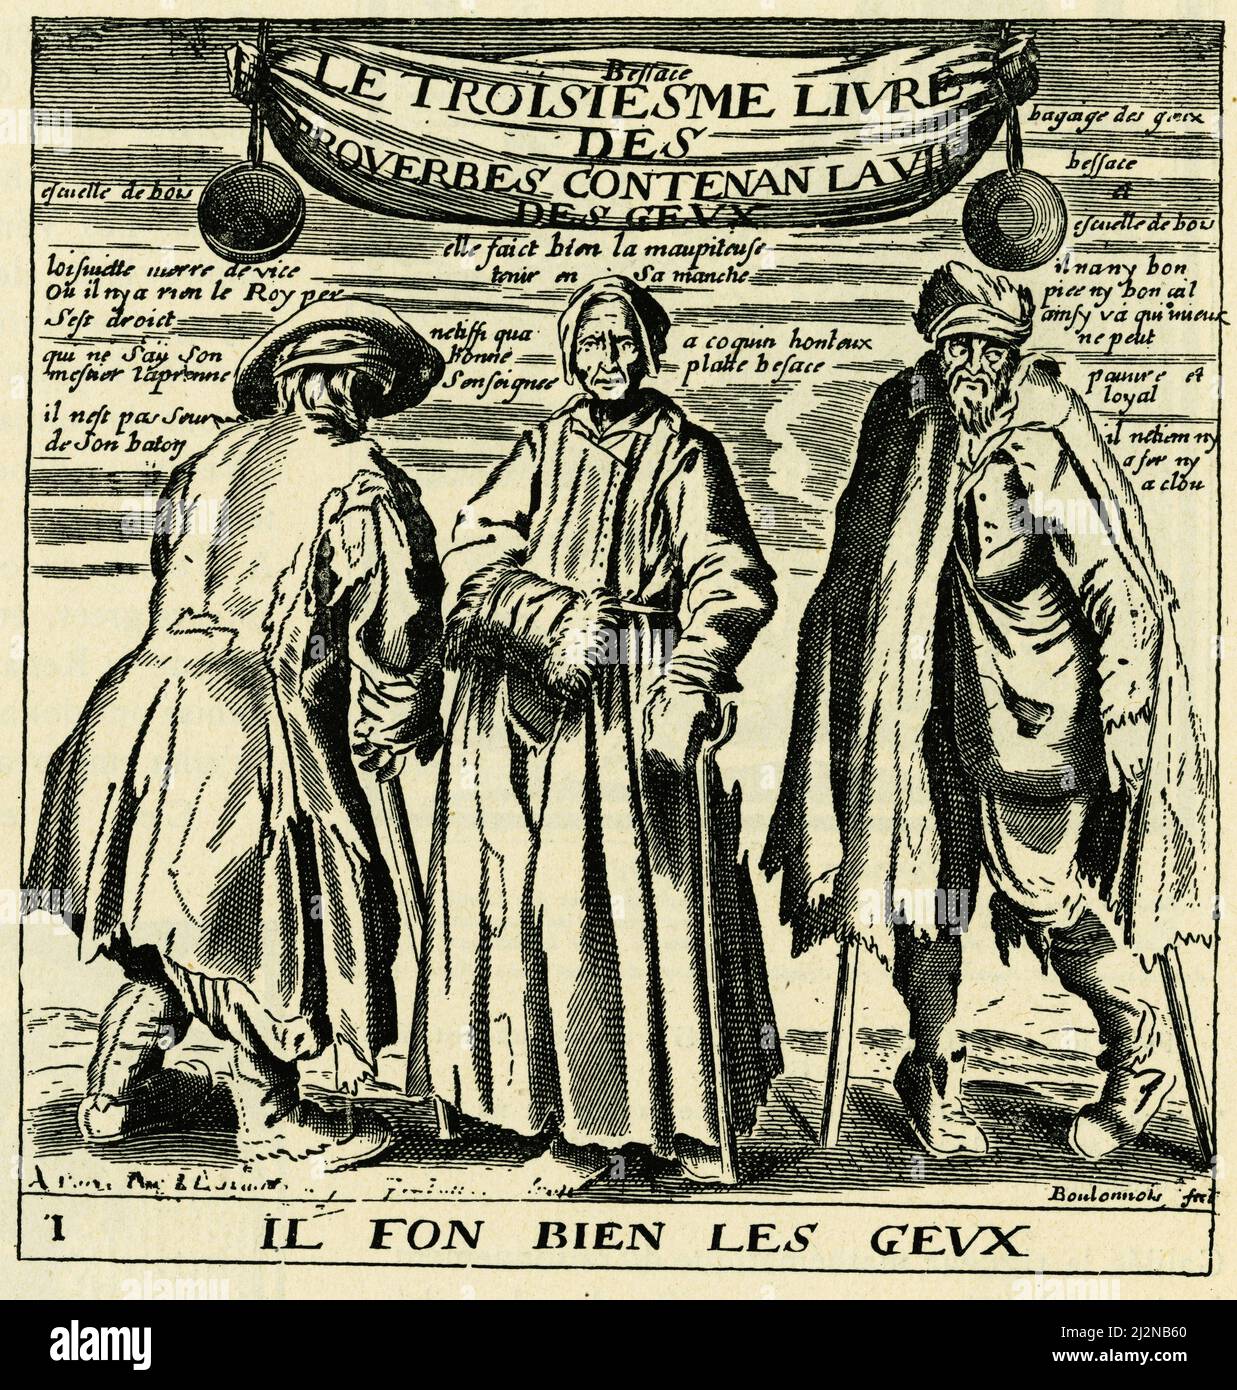 ILs font bien les gueux, frontispice du troisieme livre des proverbes de Jacques Lagniet ( XVIIe siecle ) contenant ' la vie des gueux'. Stock Photo